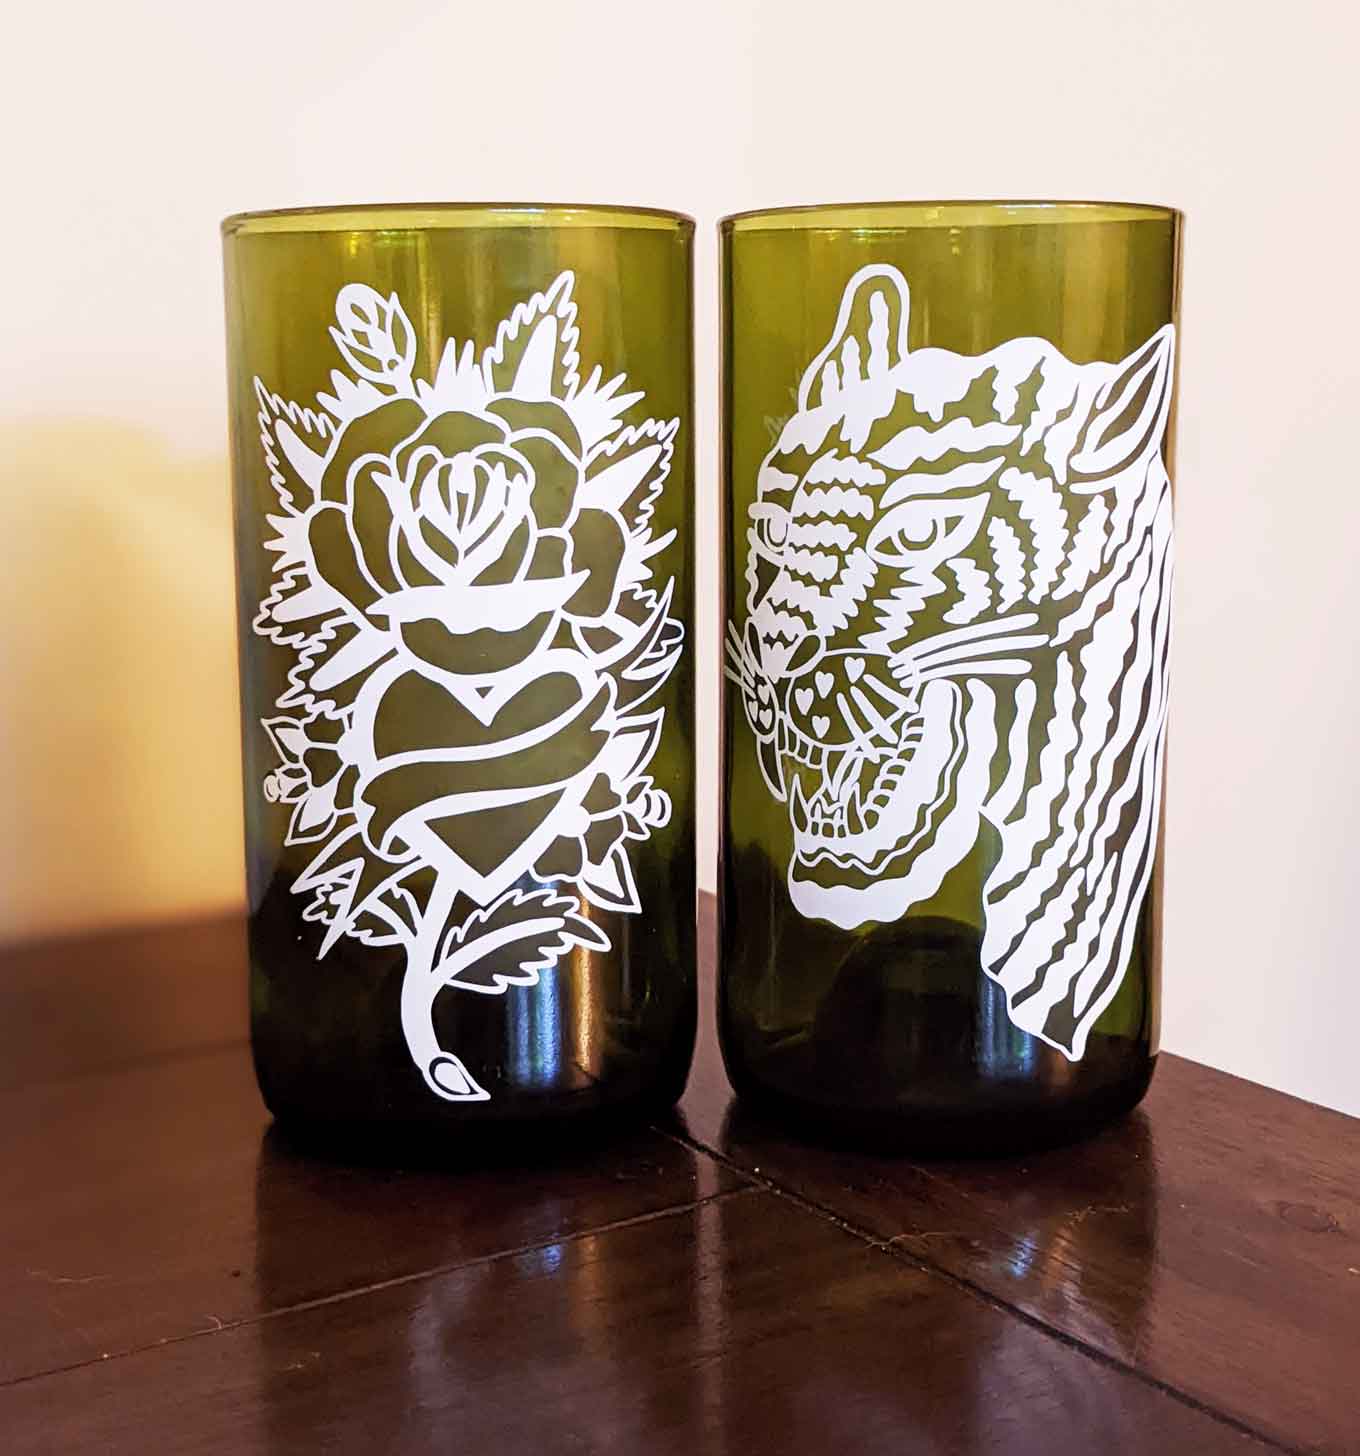 Twee groene gerecyclede glazen, een met een bloemmotief erop gedrukt en een andere met een tijgerontwerp